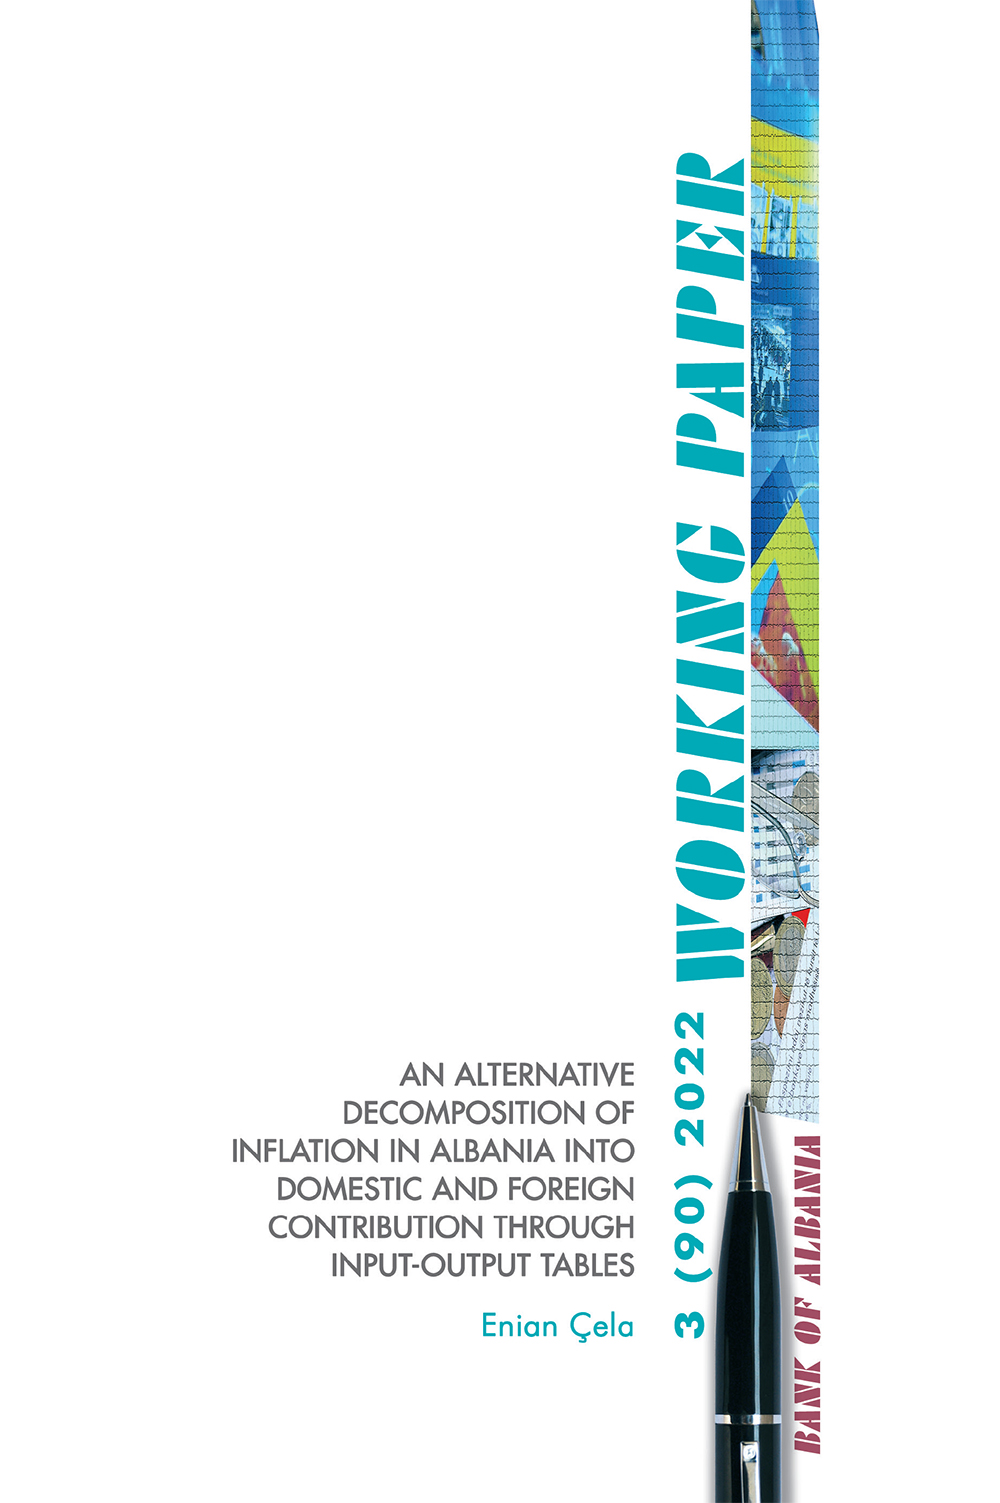 Një përqasje alternative për dekompozimin e inflacionit në Shqipëri, në kontribute të brendshme dhe të jashtme nga matrica input-output